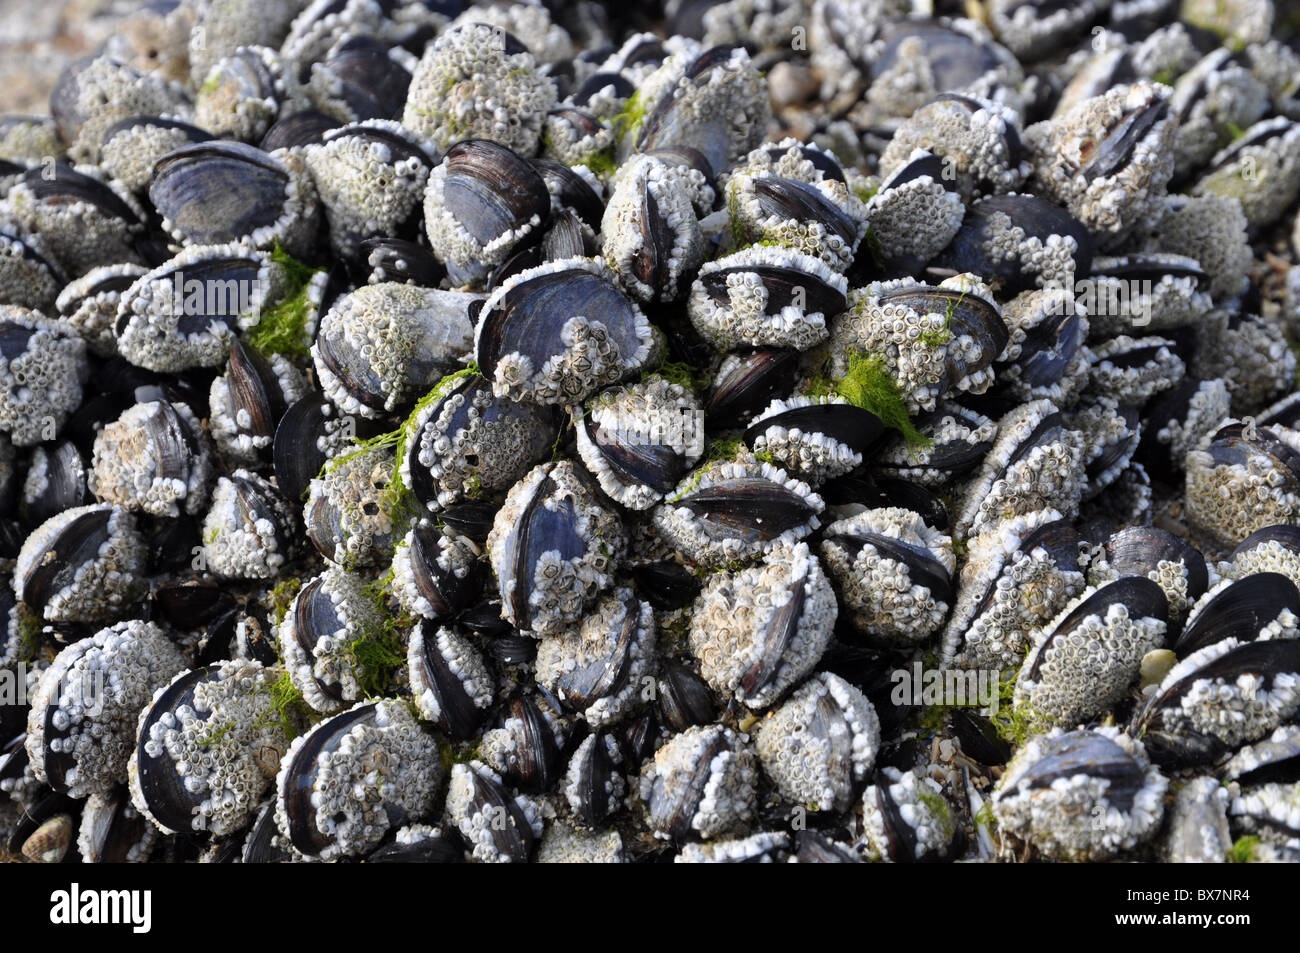 Conchiglie di mare "acorn barnacles' Foto Stock